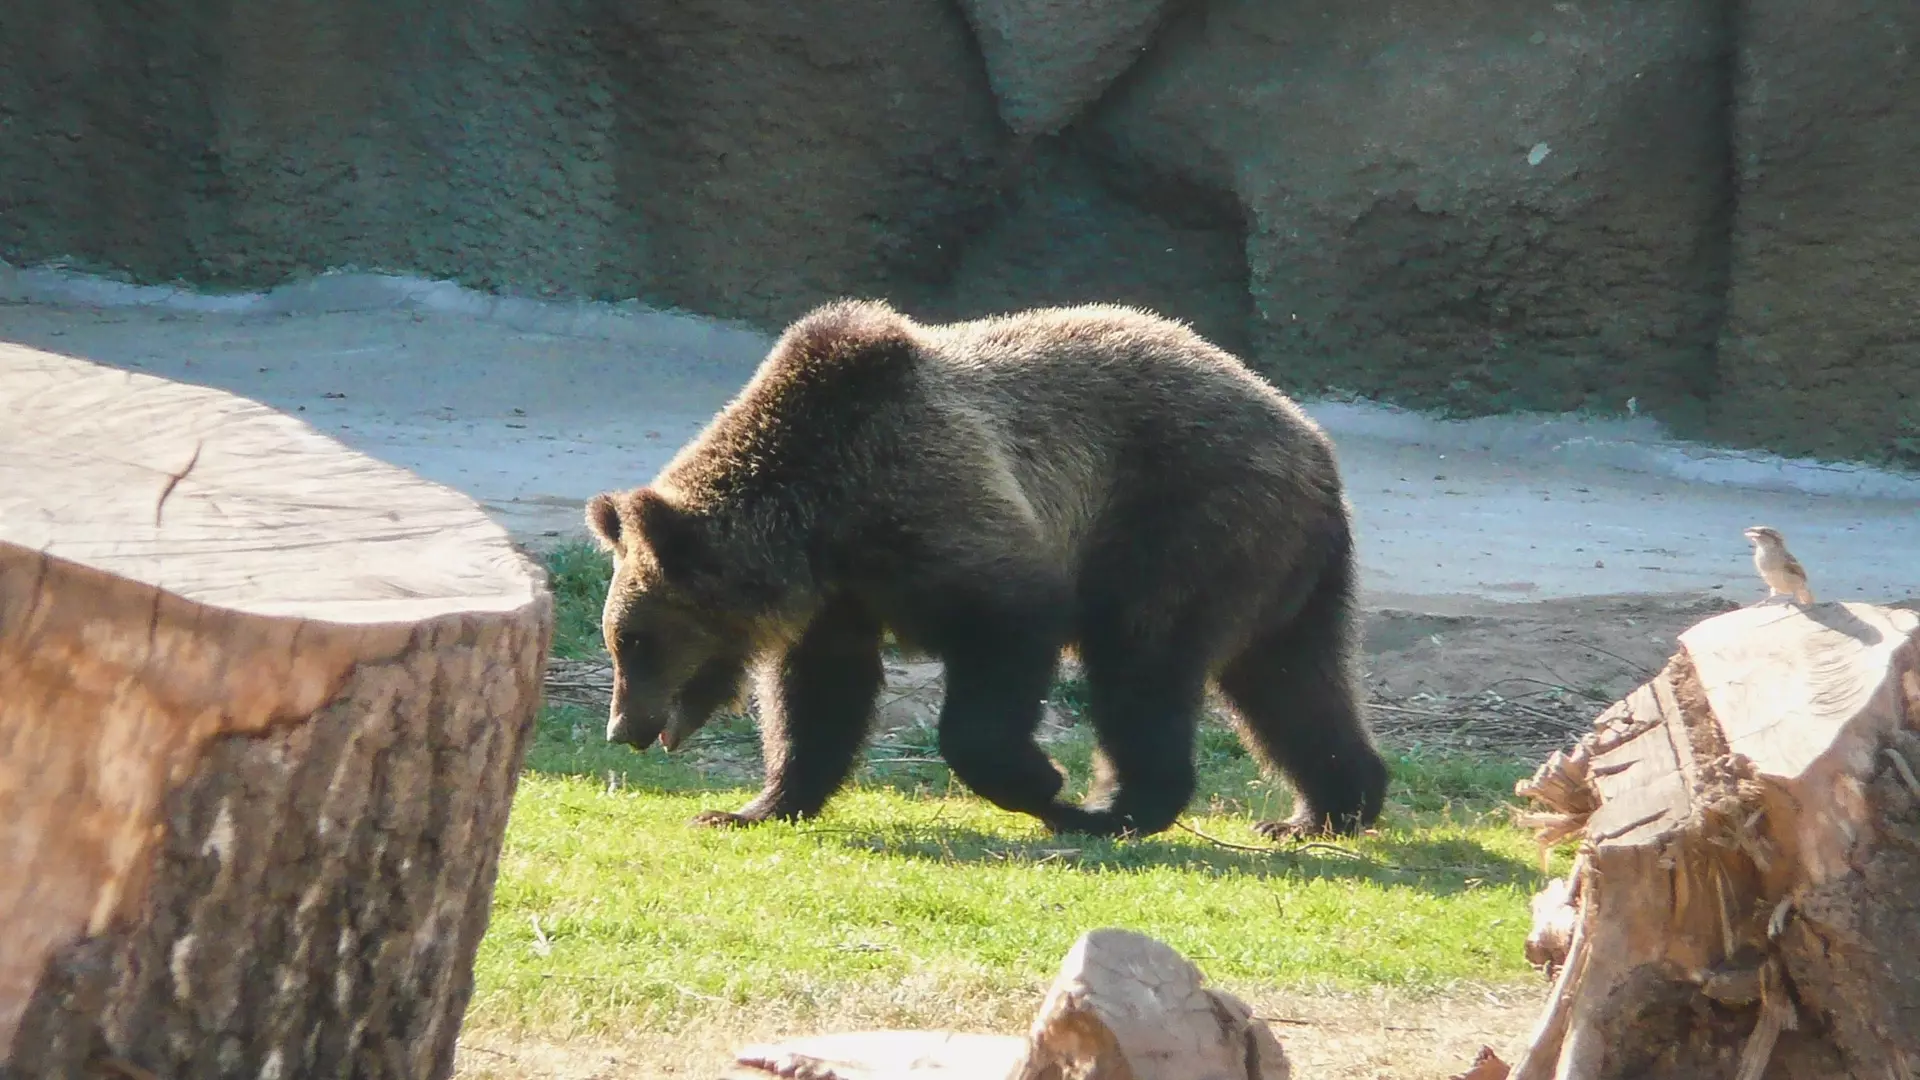 Челябинец покормил медведя сосисками и жвачкой в зоопарке, нарушив правила